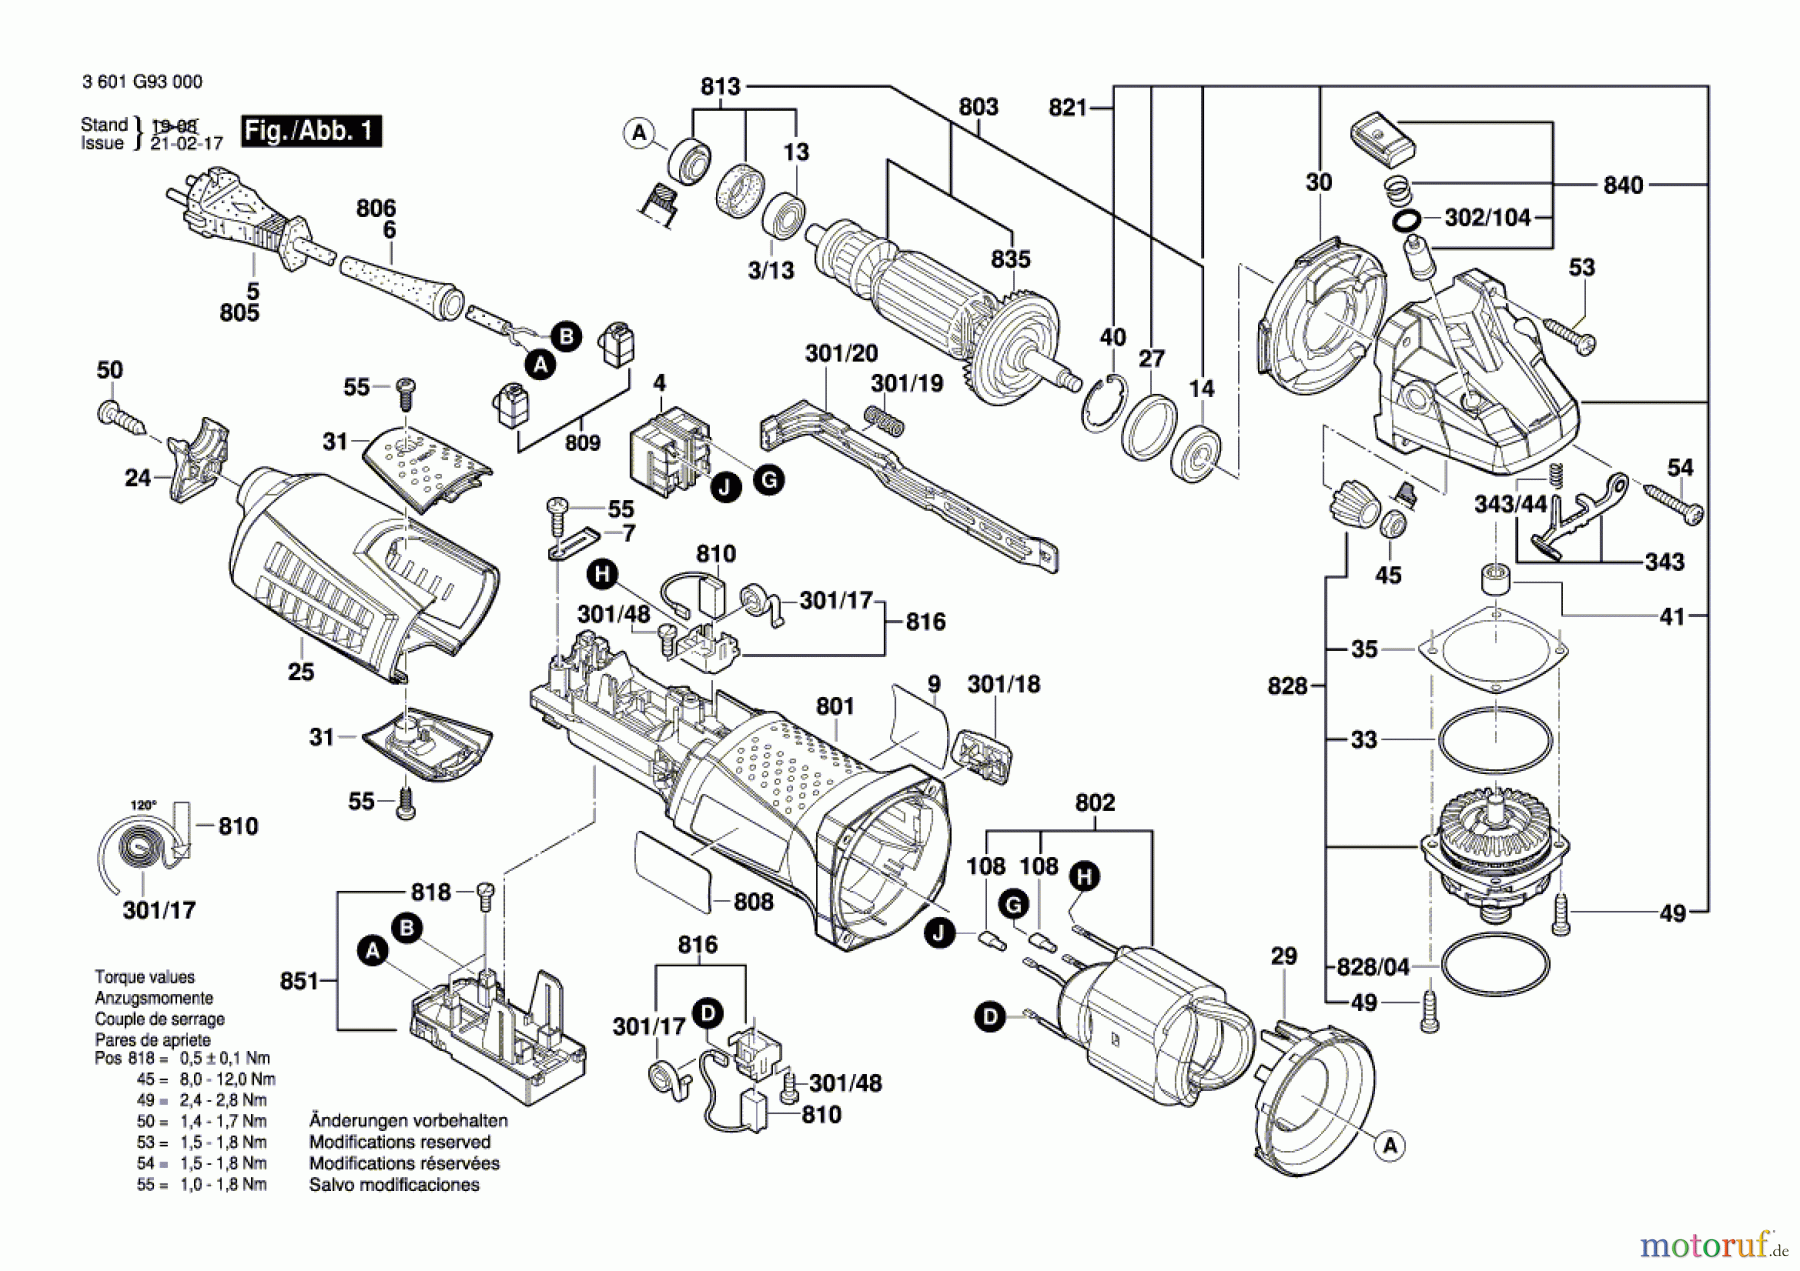  Bosch Werkzeug Winkelschleifer GWS 12-125 Seite 1